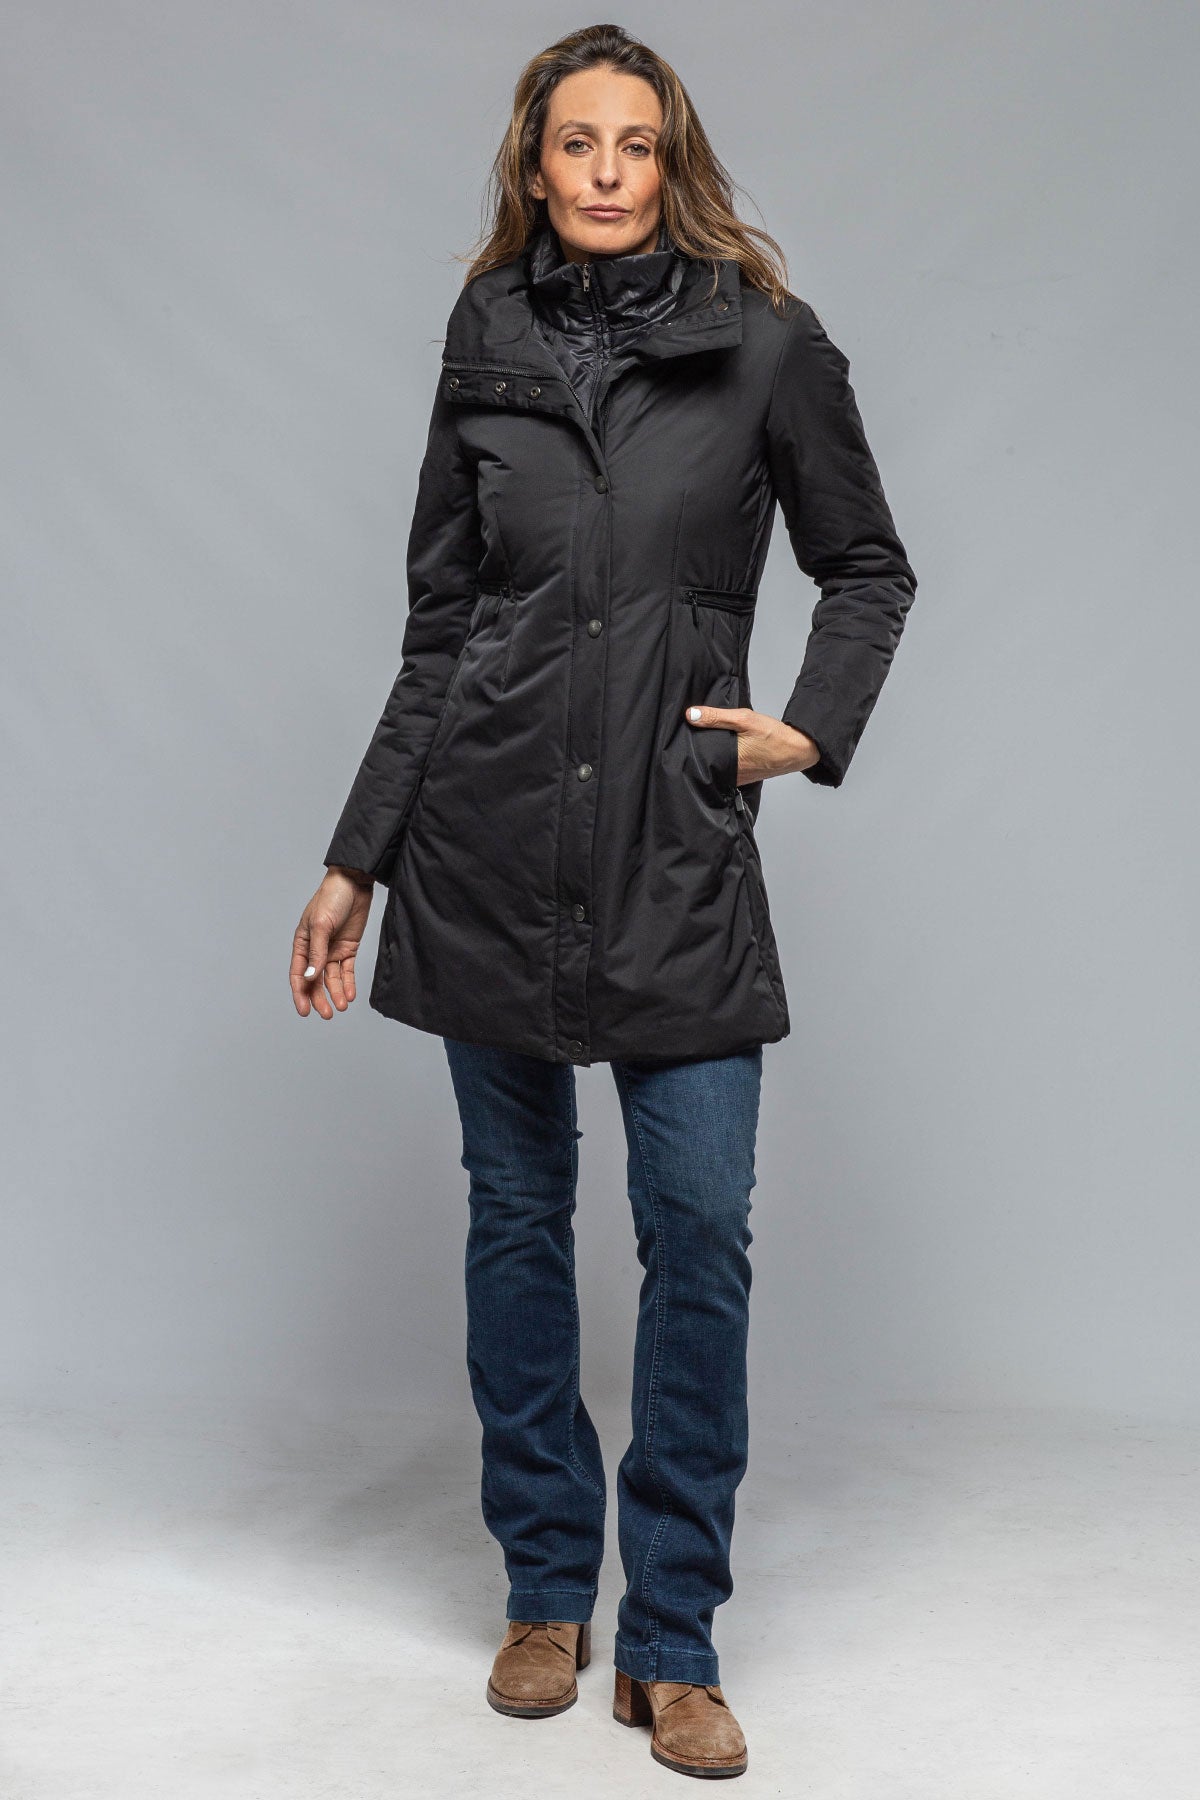 Itala Jacket | Warehouse - Ladies - Outerwear - Cloth | Gimo's